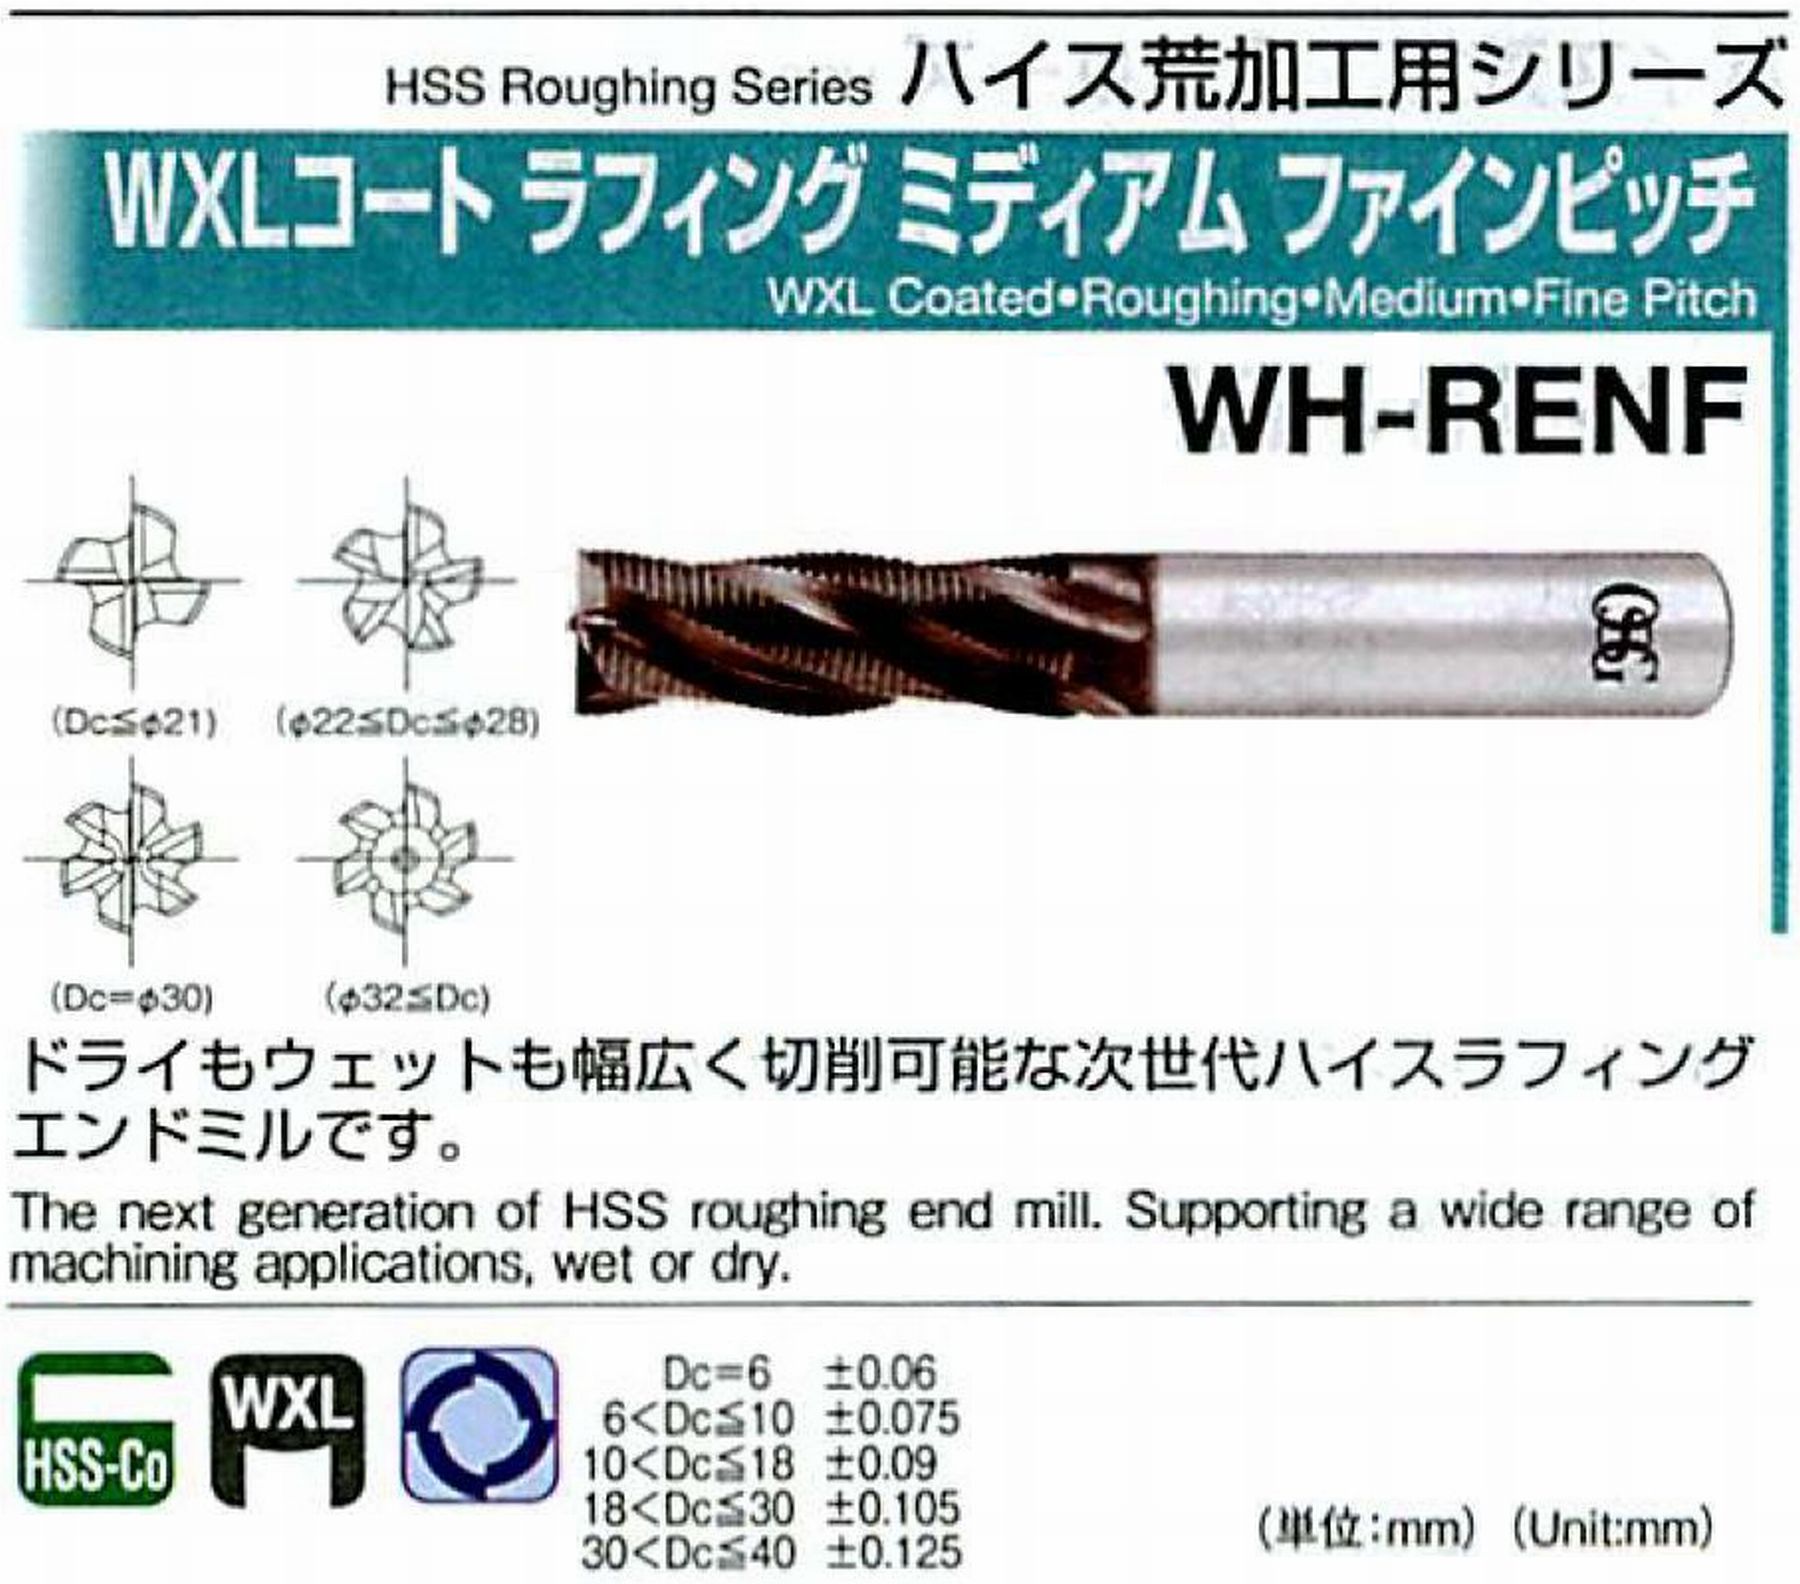 WXLコートラフィングミディアム ファインピッチ WH-RENF(用途:被削材:炭素鋼、合金鋼、工具鋼、プリハードン鋼、ステンレス鋼、鋳鉄